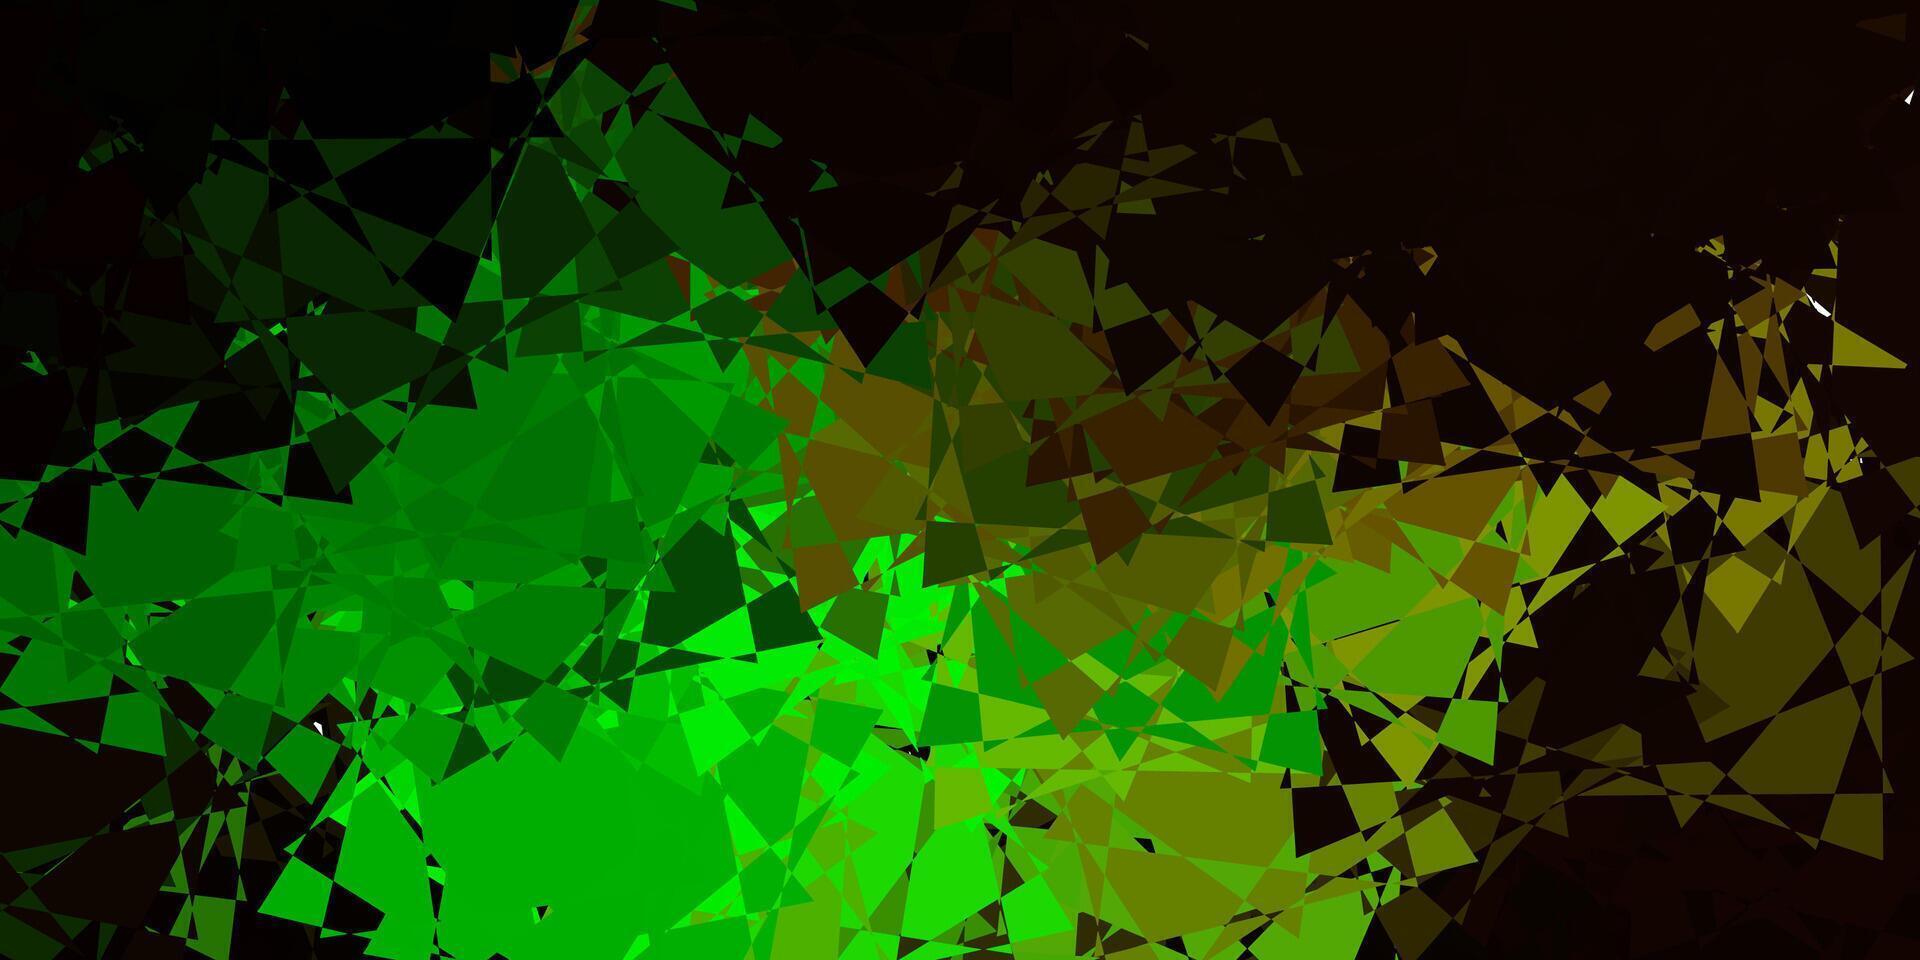 patrón de vector verde oscuro con formas poligonales.